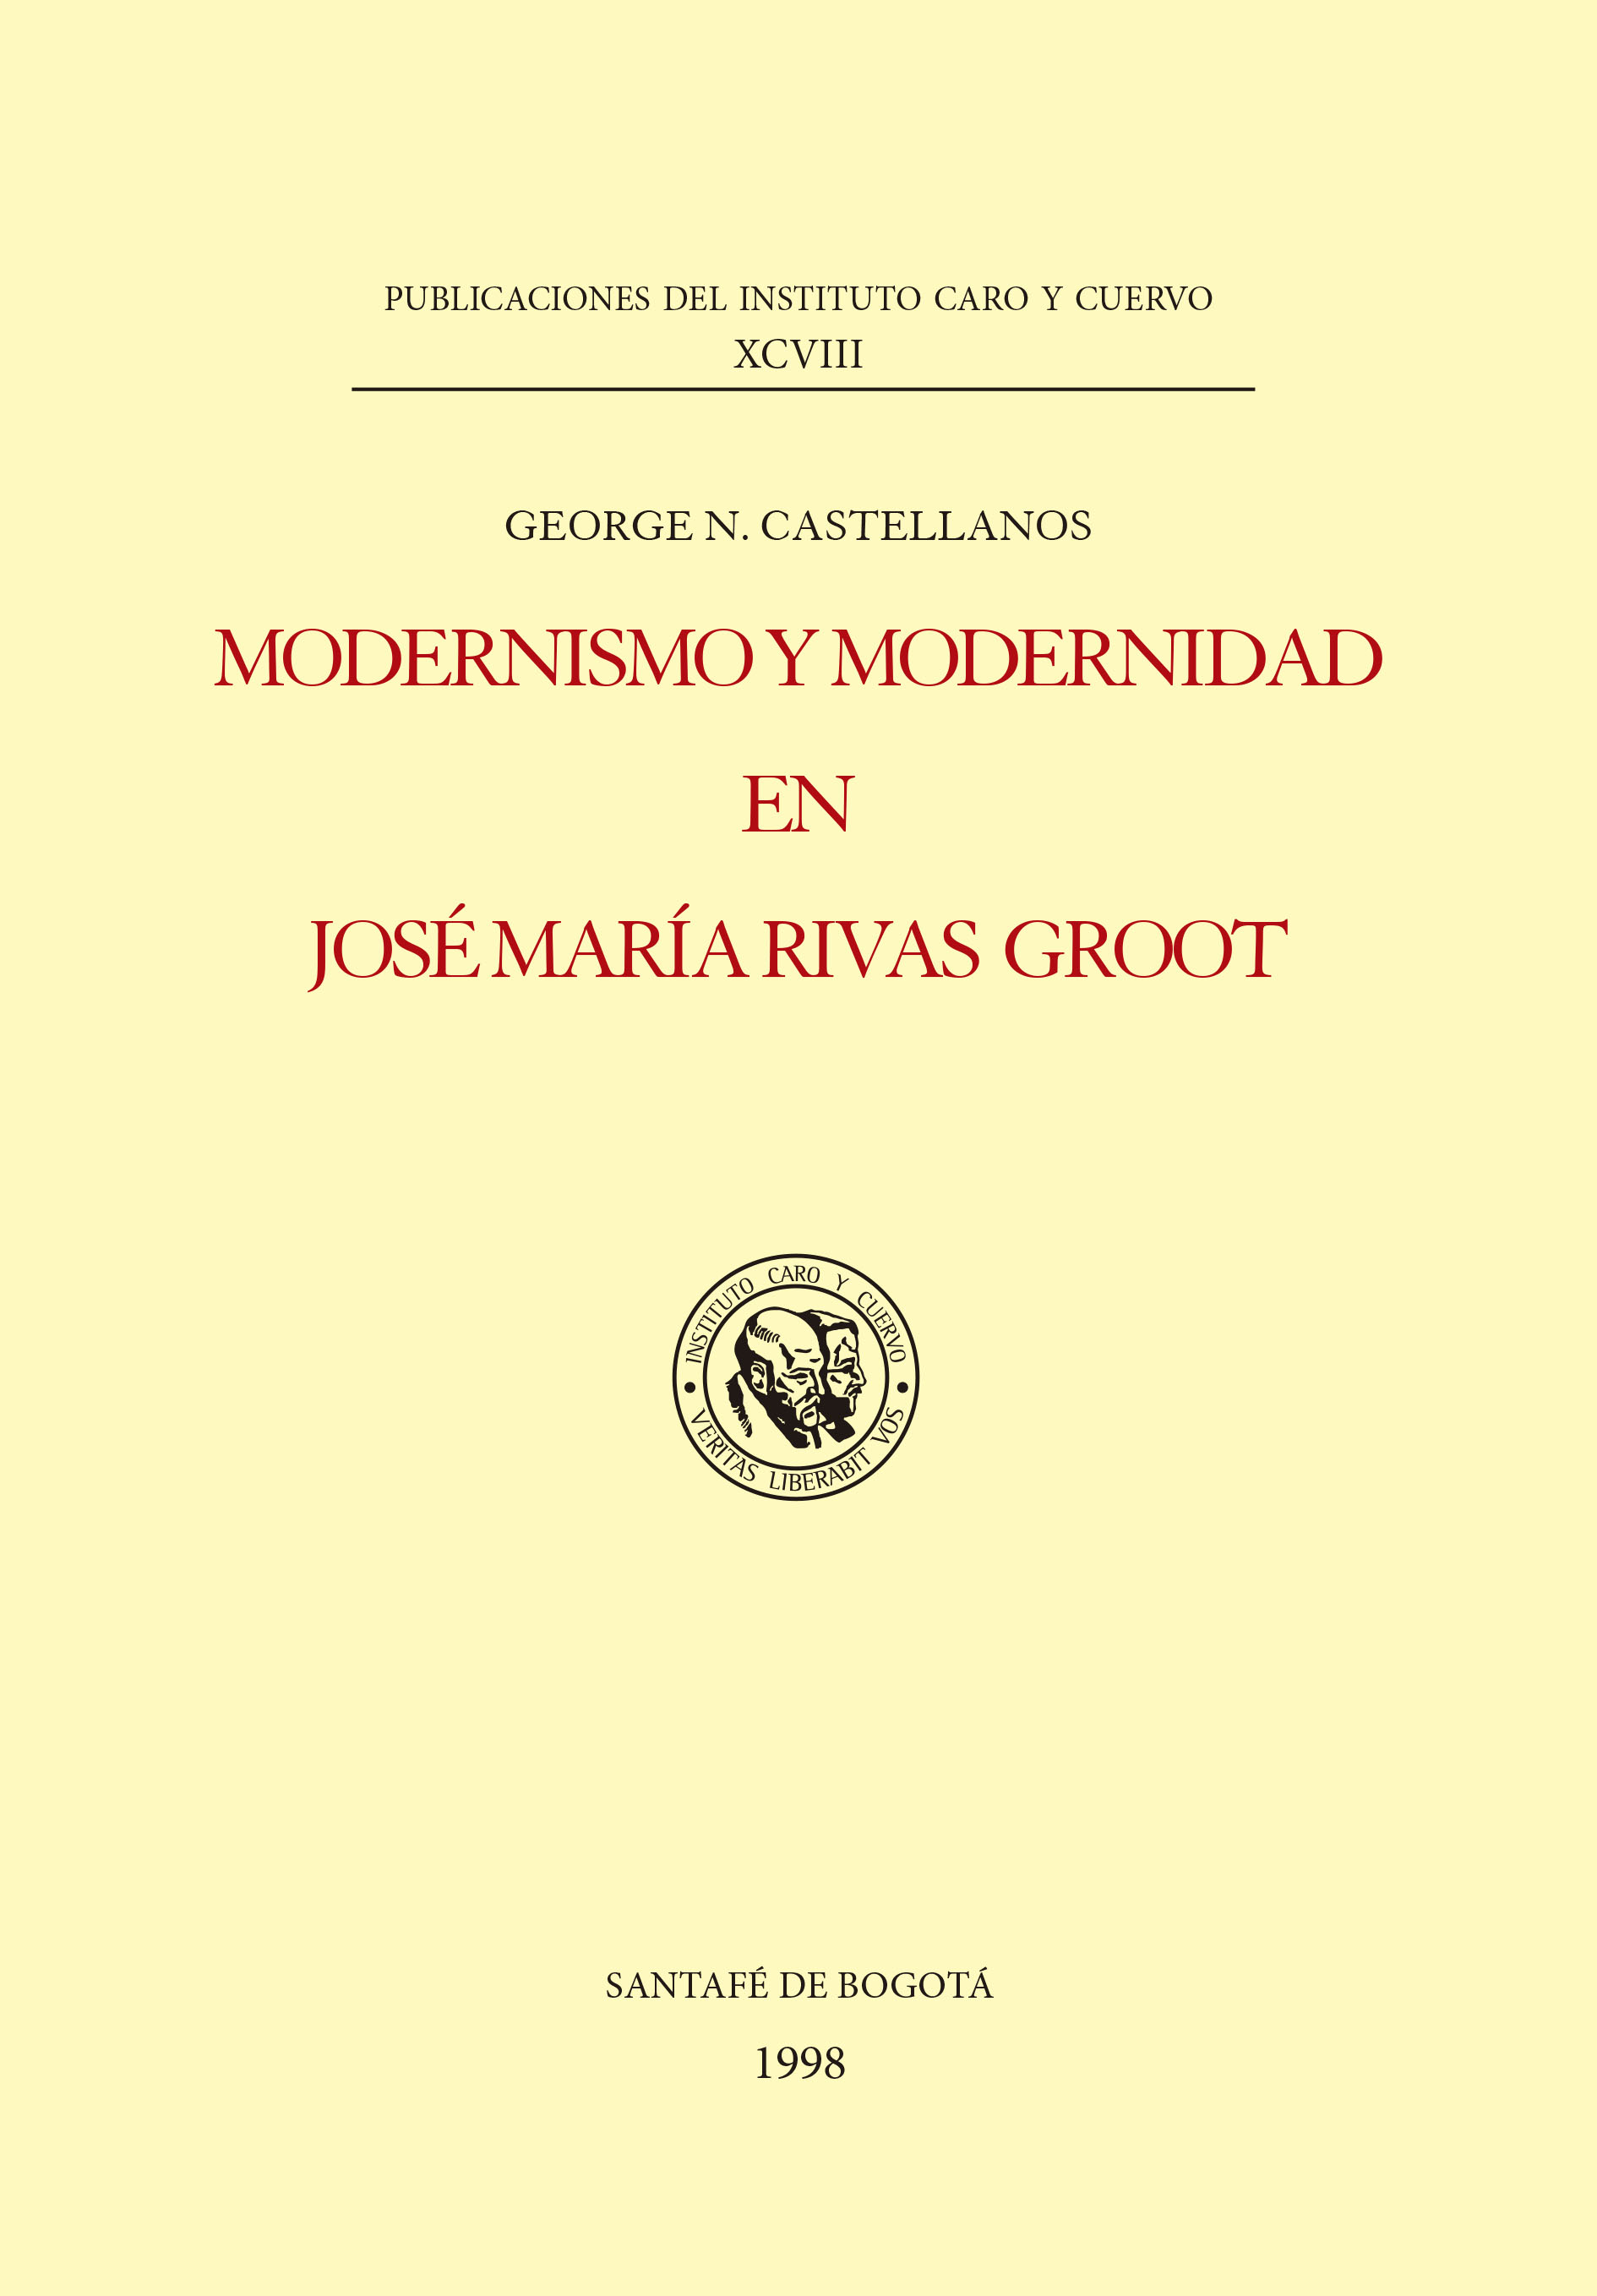 Modernismo y modernidad en José María Rivas Groot